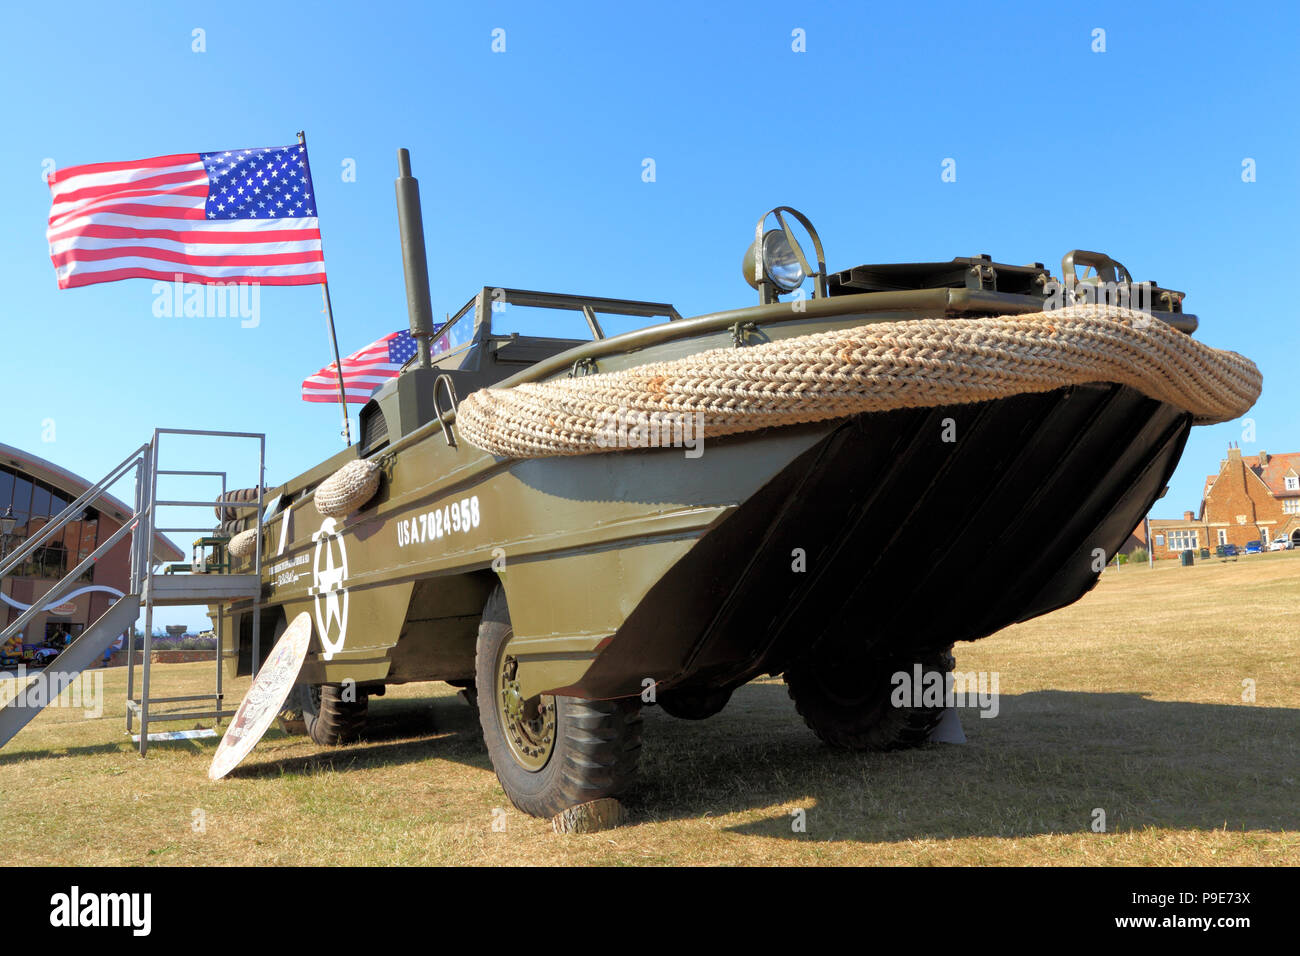 Us-Zweiten Weltkrieg DUKW, Amphibischen, Militär, Fahrzeug, WW2, Sterne und Streifen, American, Flag Stockfoto